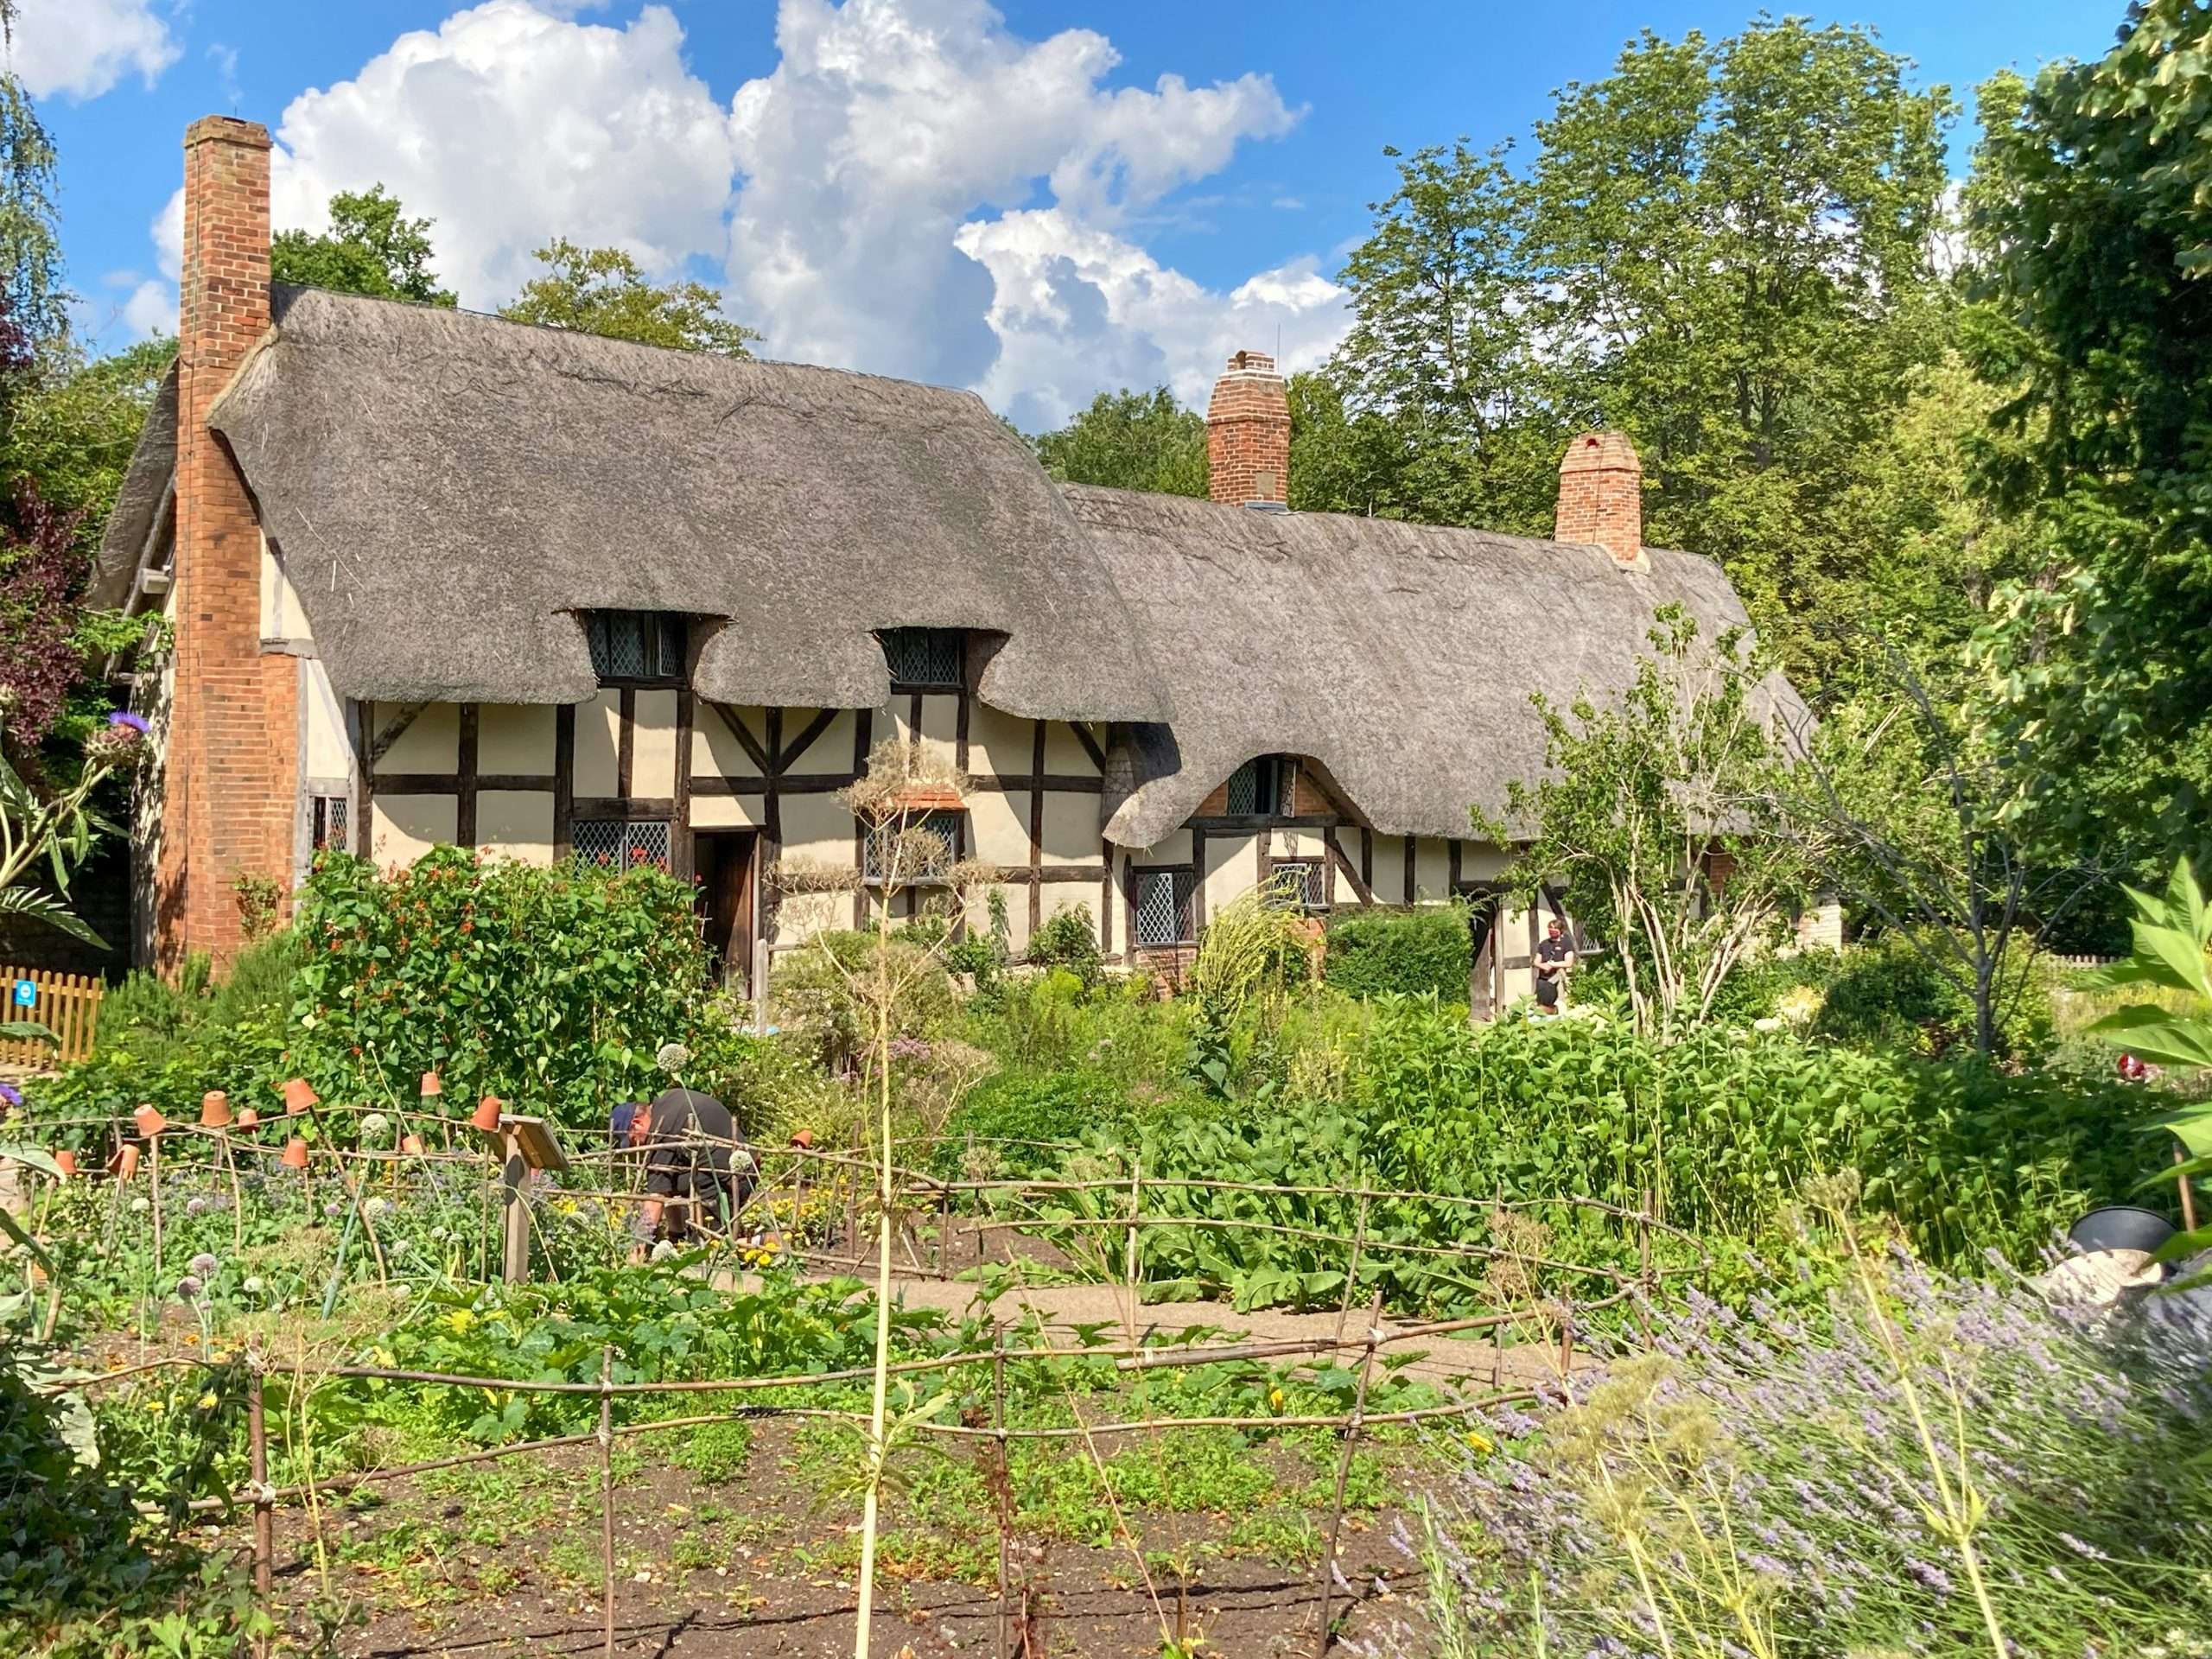 Anne Hathaways Cottage - William Shakespeare Stratford-upon-Avon